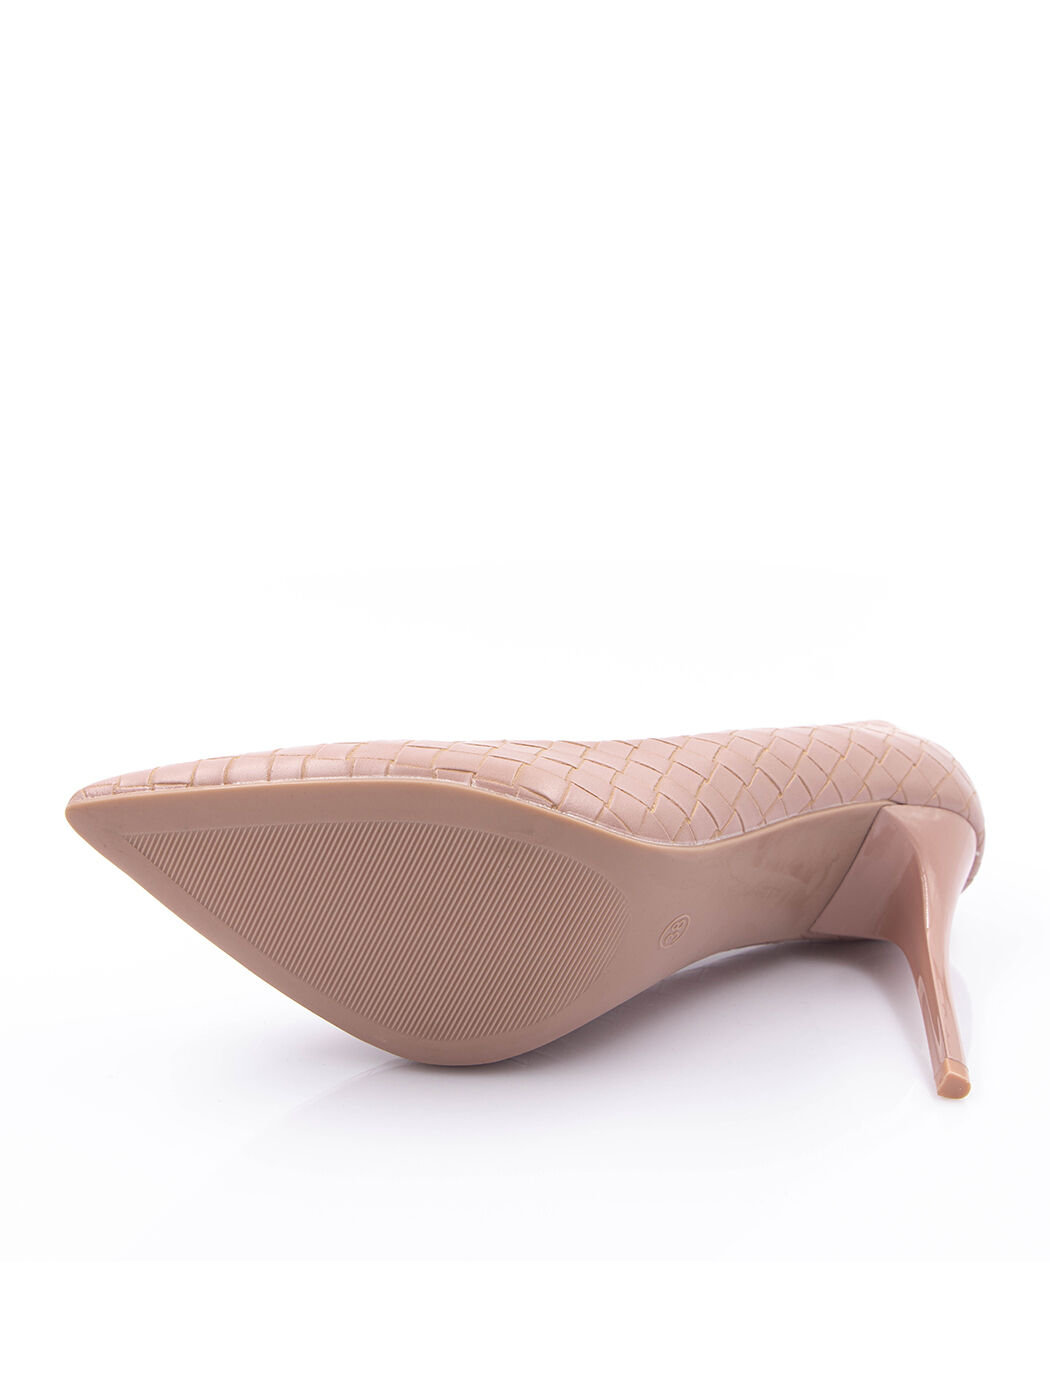 Туфли женские розовые экокожа каблук шпилька демисезон от производителя EM вид 2